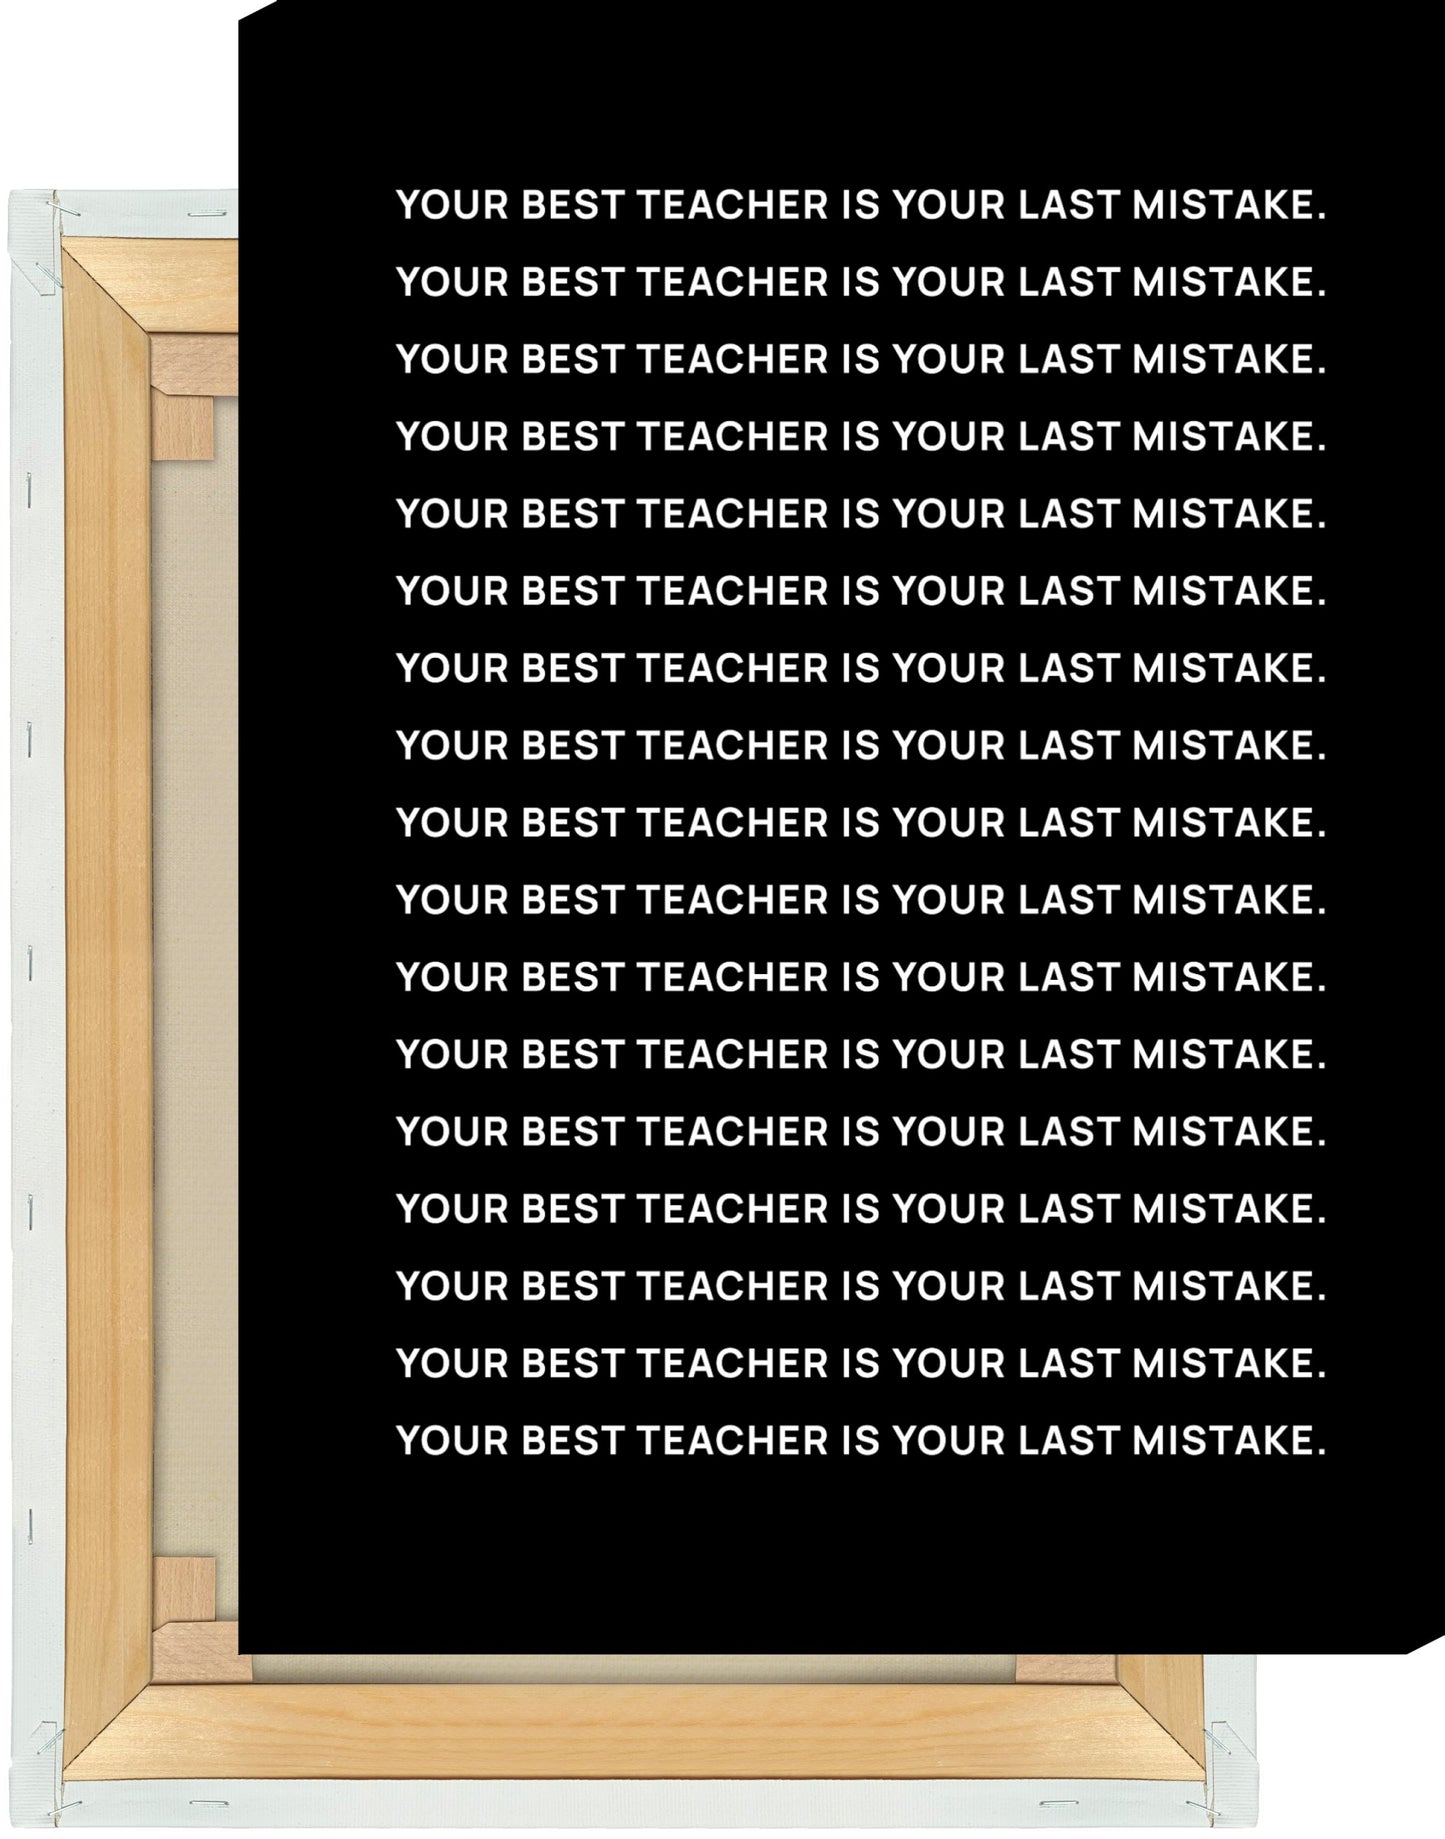 Leinwand Your best teacher is your last mistake #1